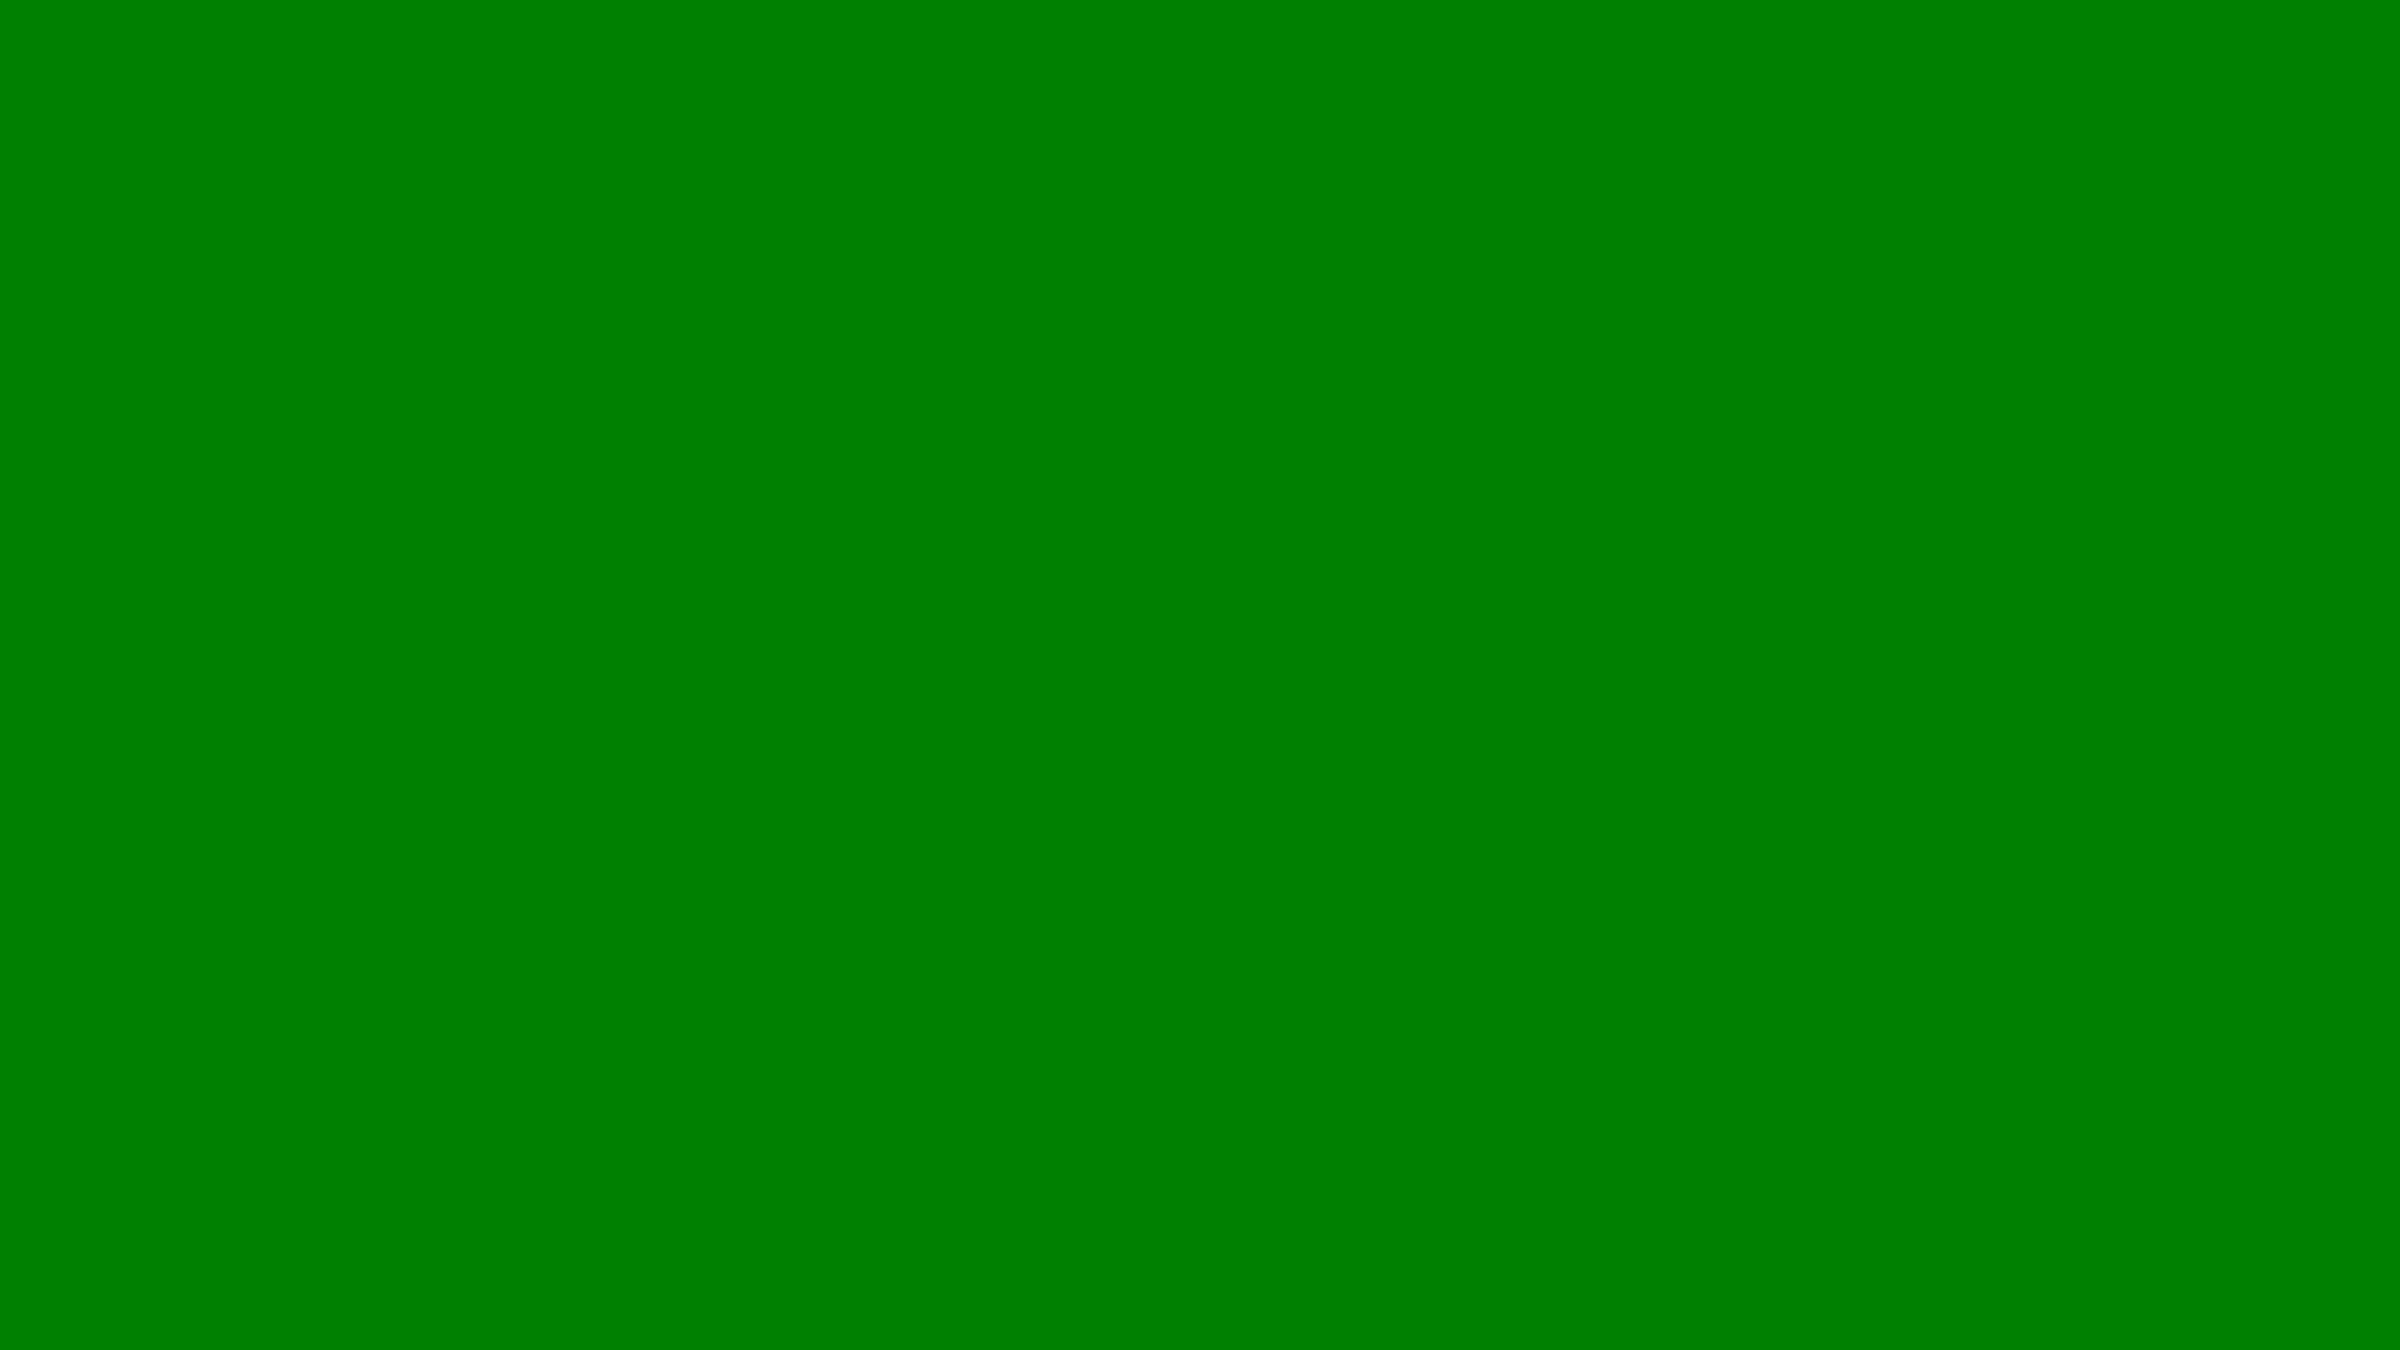 green screen wallpaper,green,grass,leaf,yellow,artificial turf